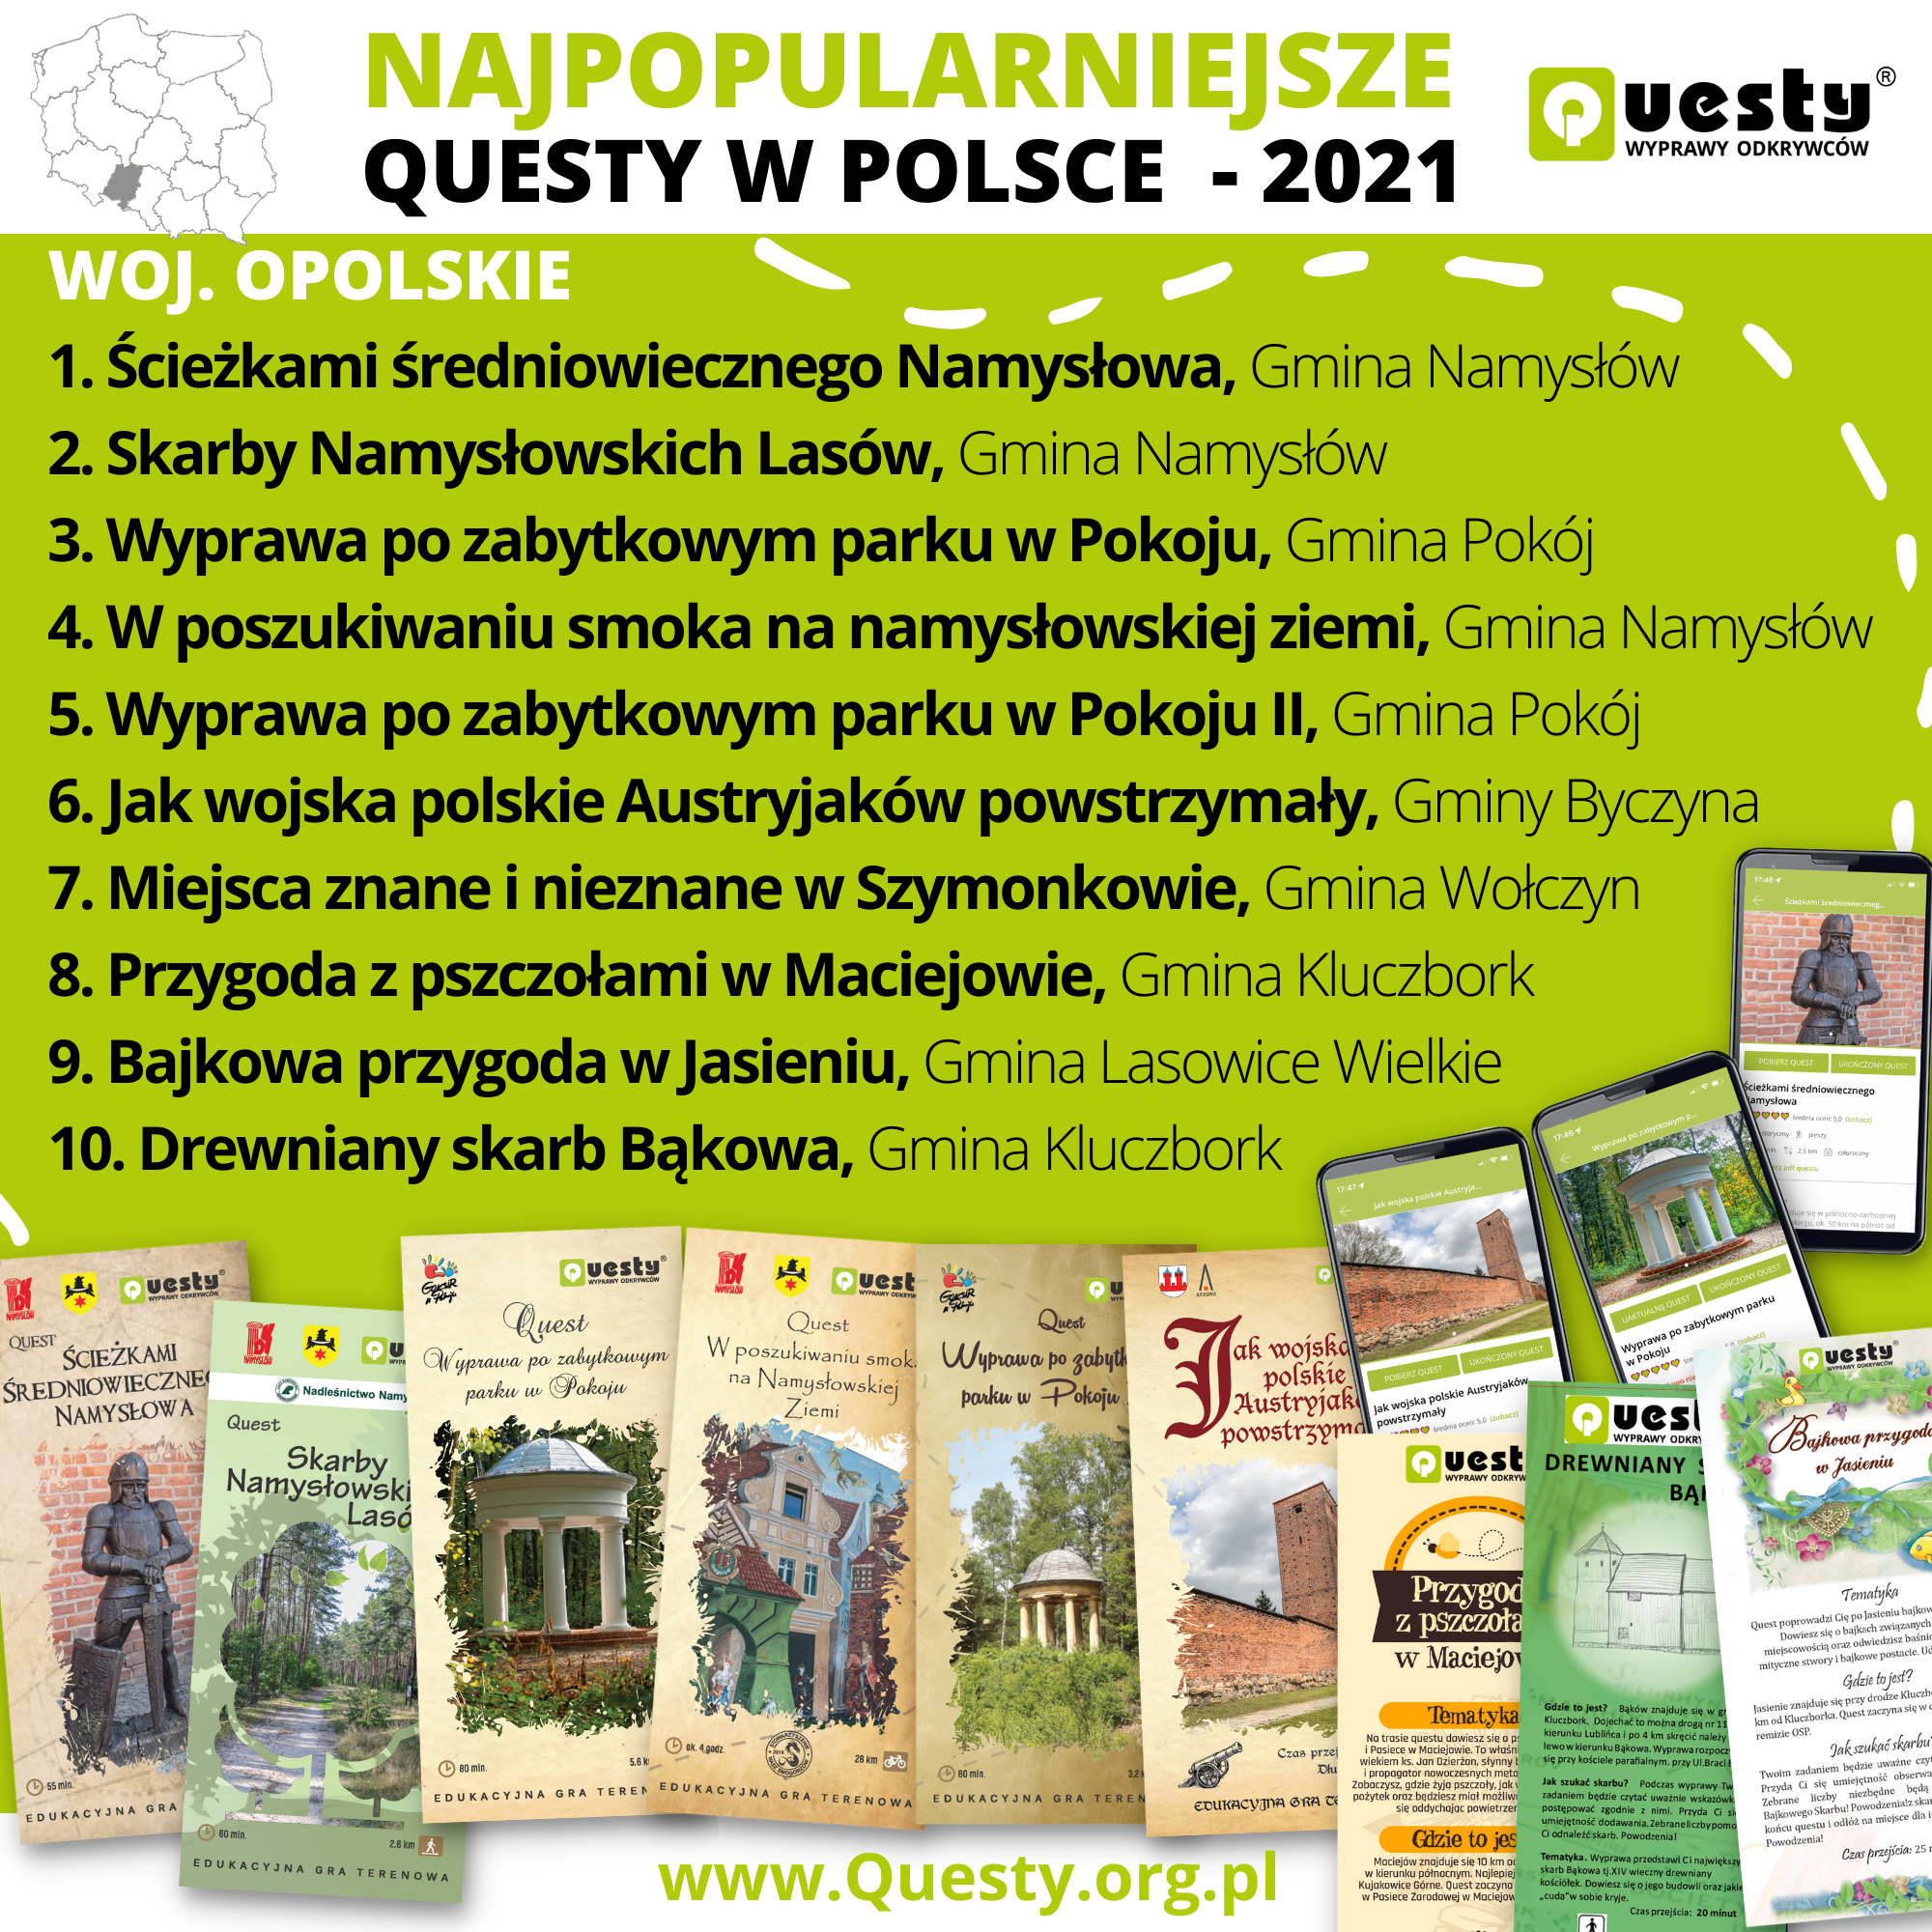 Najpopularniejsze questy w Polsce 2021 - woj. opolskie